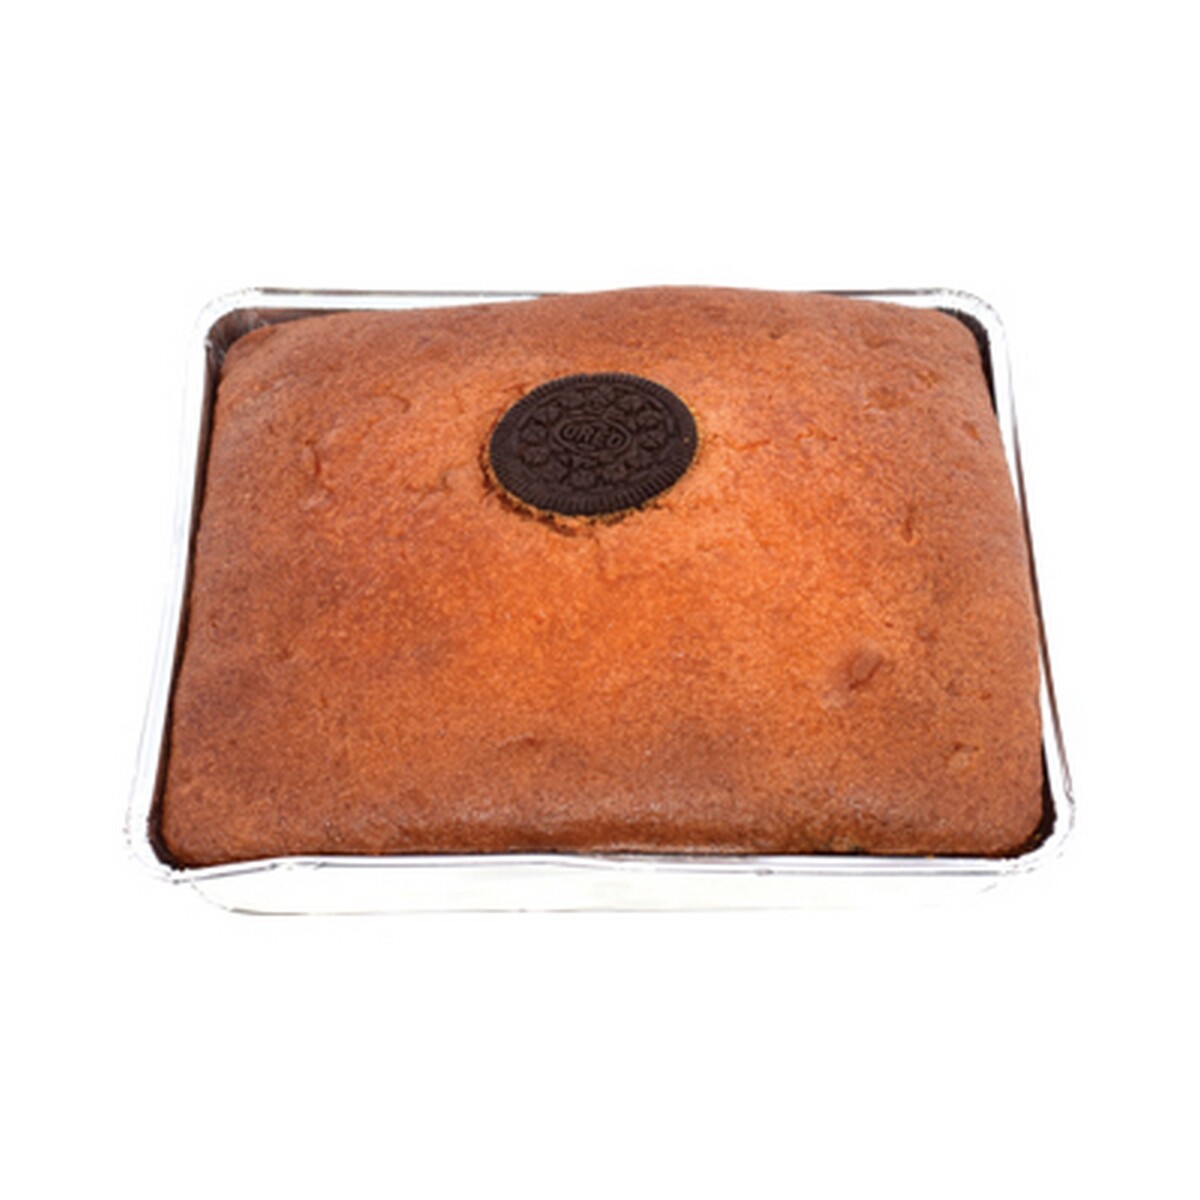 Oreo Loaf Cake 450gm